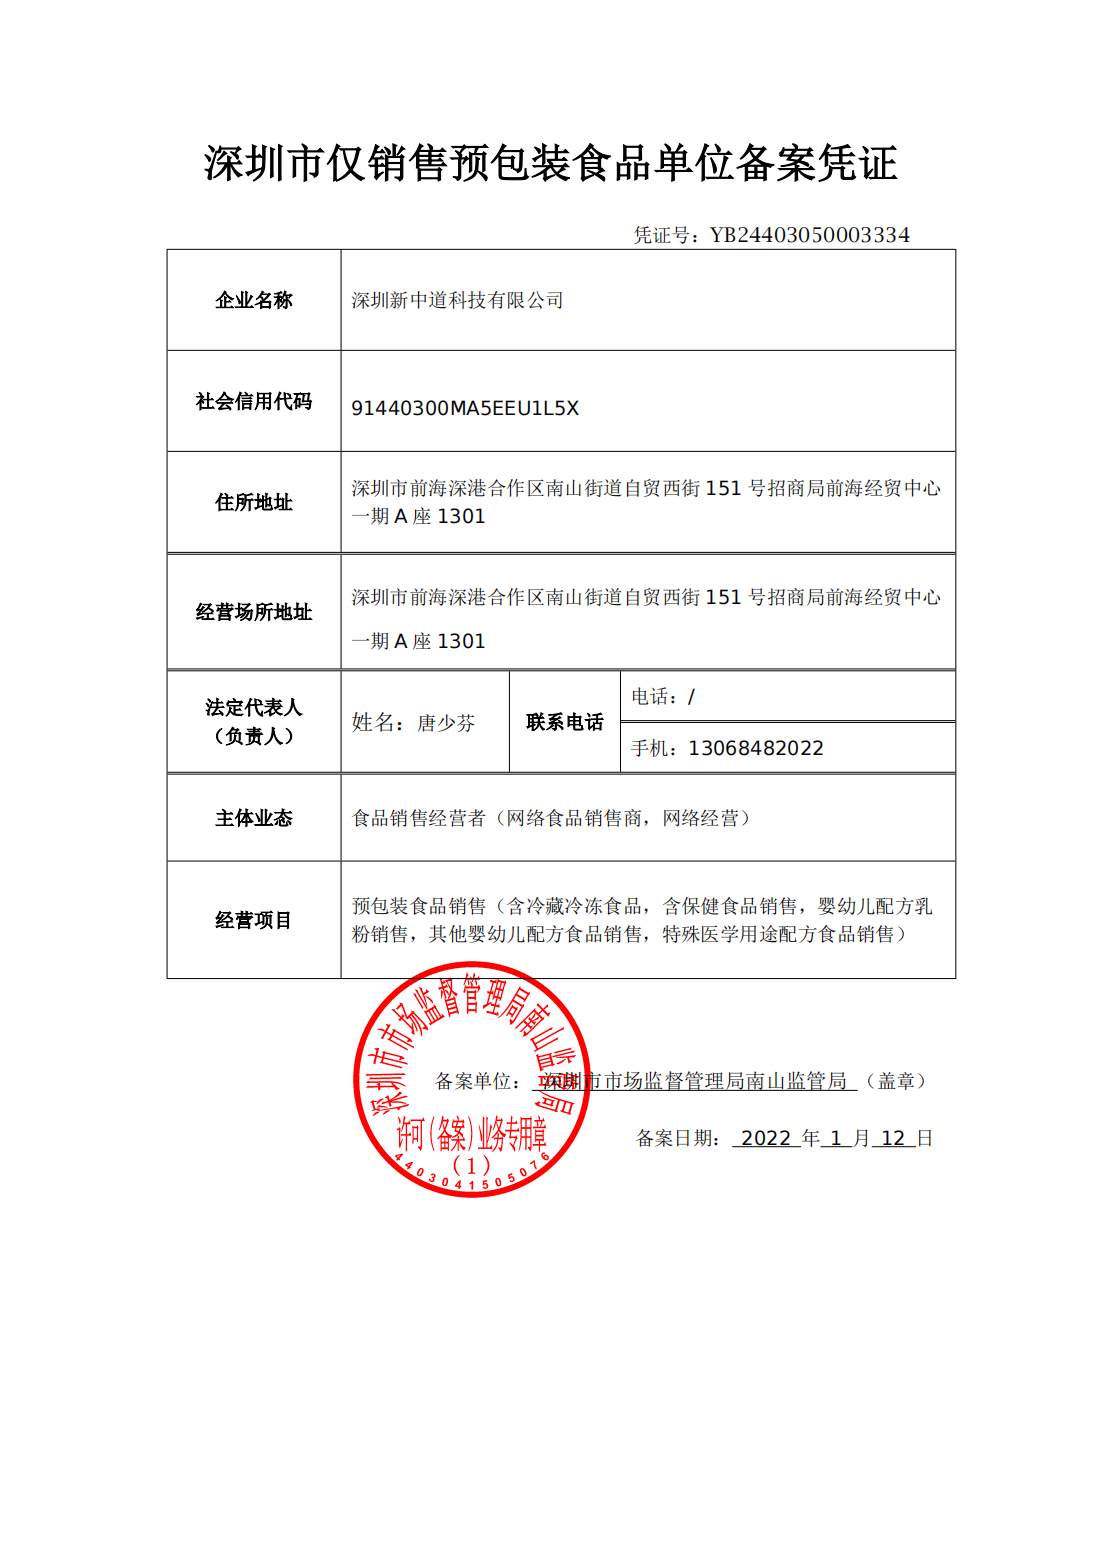 深圳市仅销售预包装食品单位备案凭证_00.png